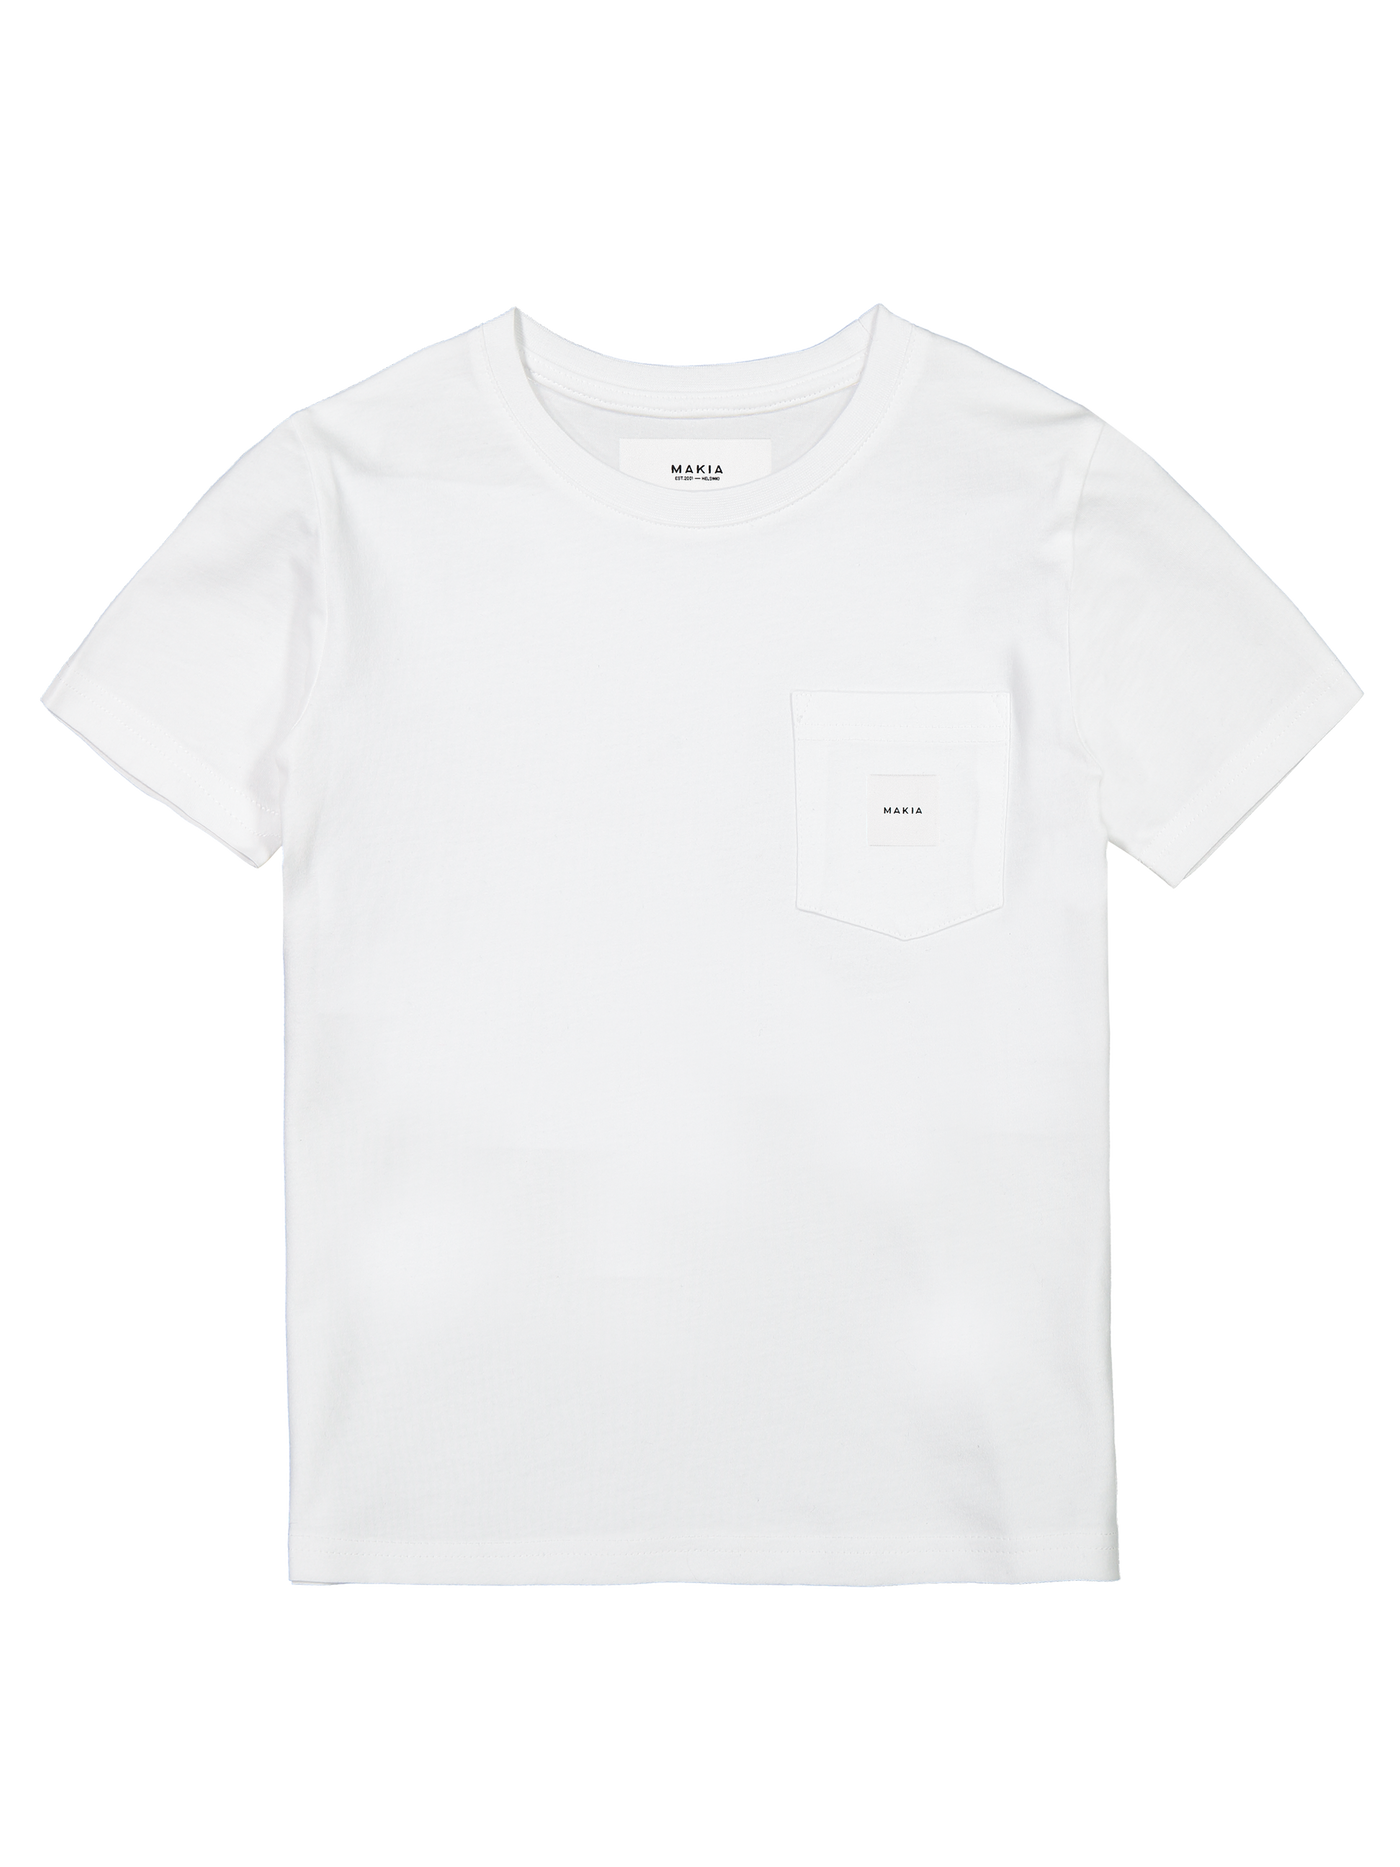 Pocket t-shirt - Children's t-shirt